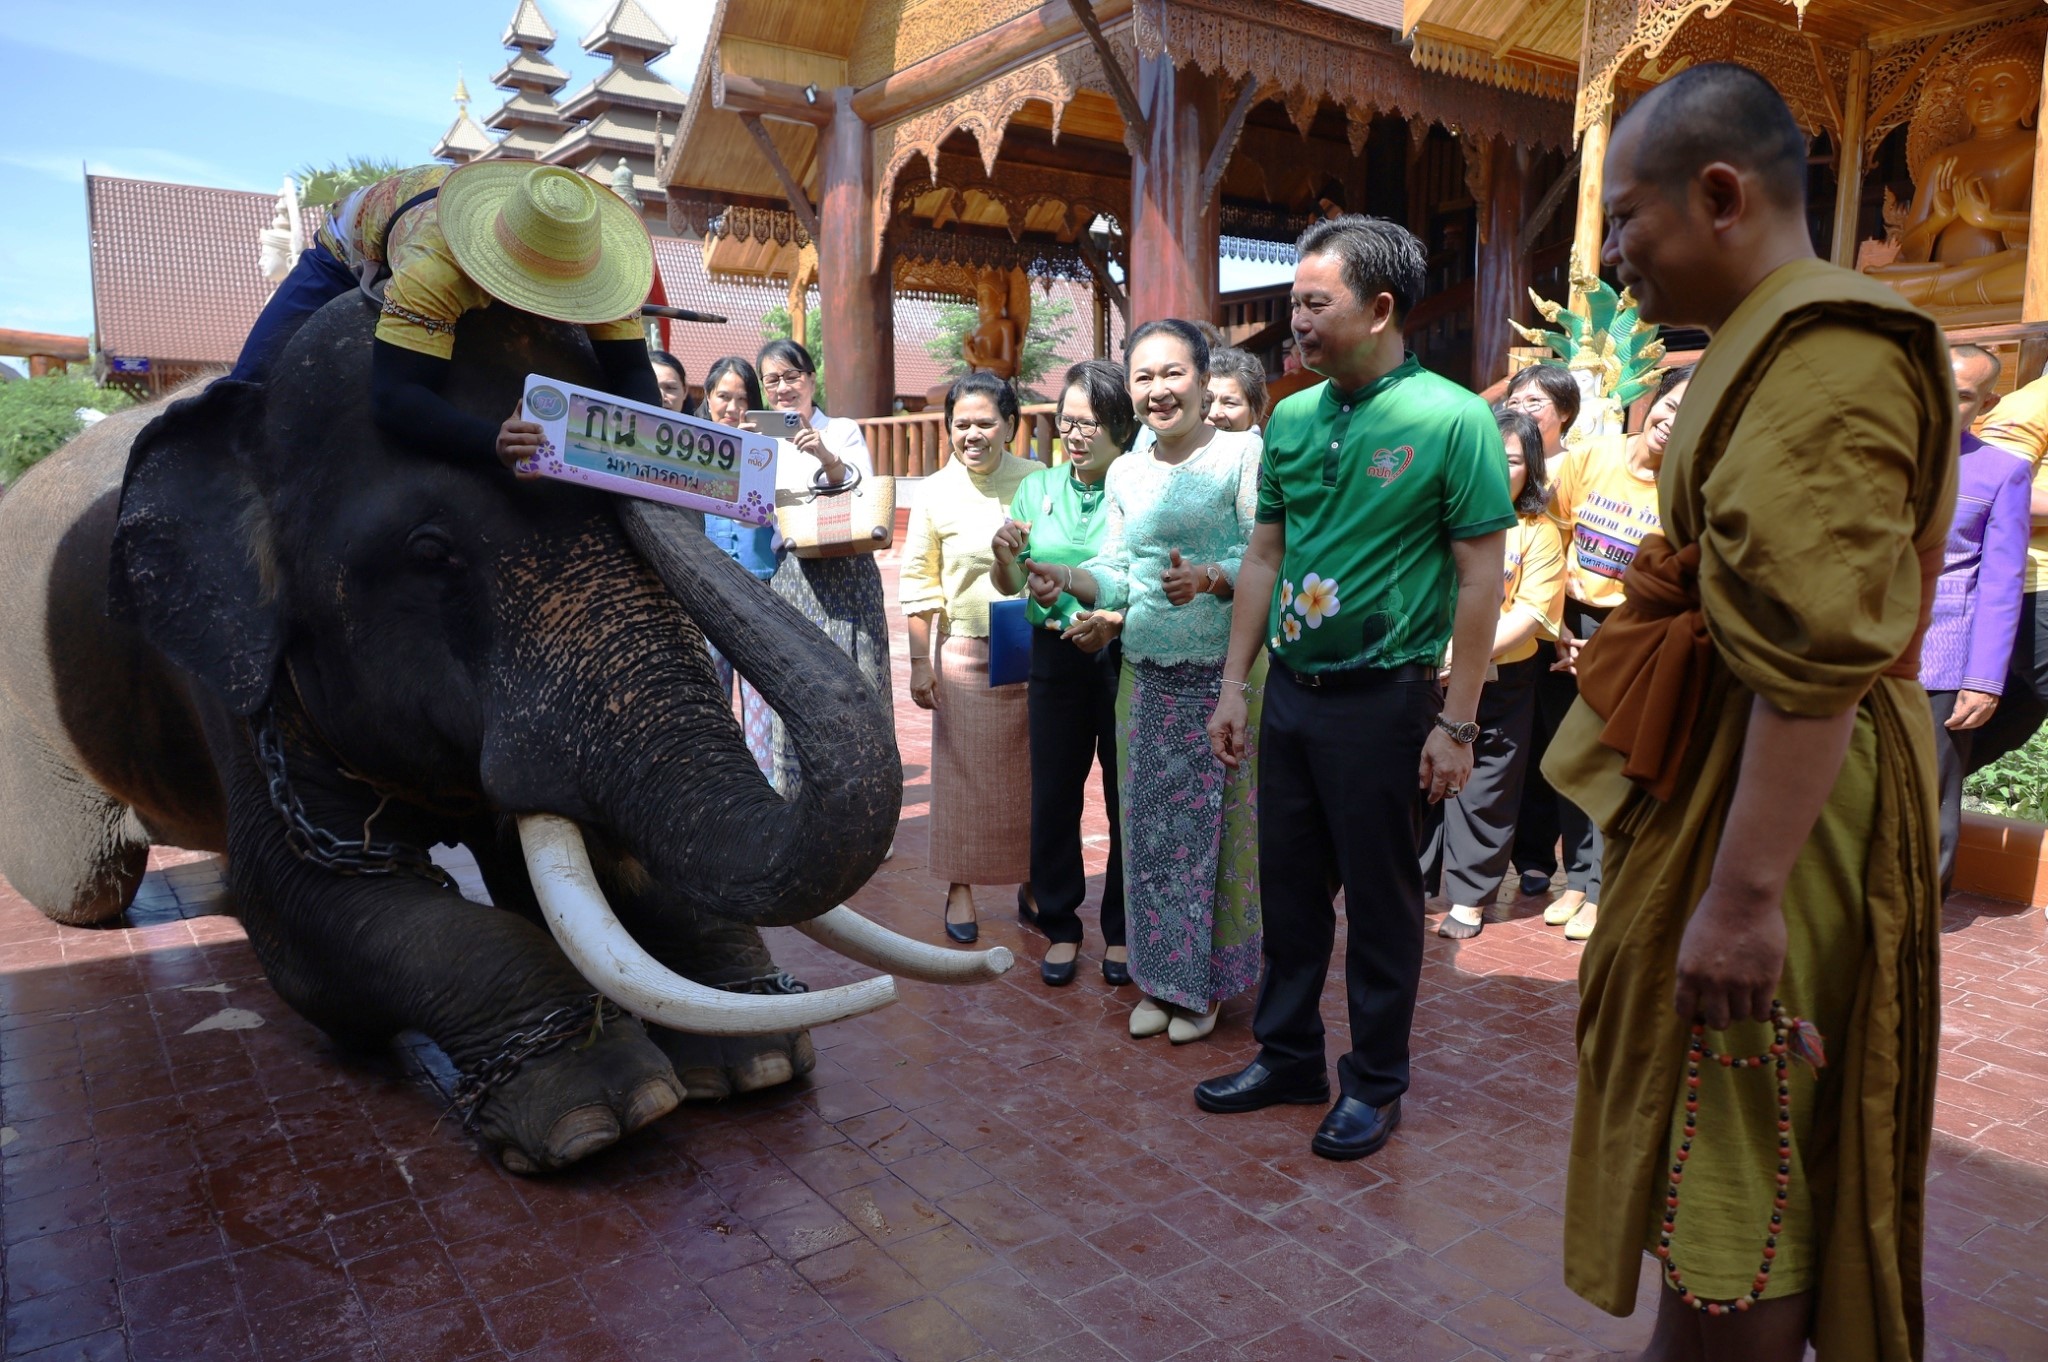 พระอาจารย์ประกอบพิธีมังคลาภิเษก เสริมสิริมงคลแผ่นป้ายทะเบียนรถเลขสวยพร้อม พลายชัย ช้างไทยเพศผู้ วัย 29 ปี ร่วมเจิมแผ่นป้ายทะเบียน เชิญชวนผู้สนใจลงทะเบียนร่วมประมูล